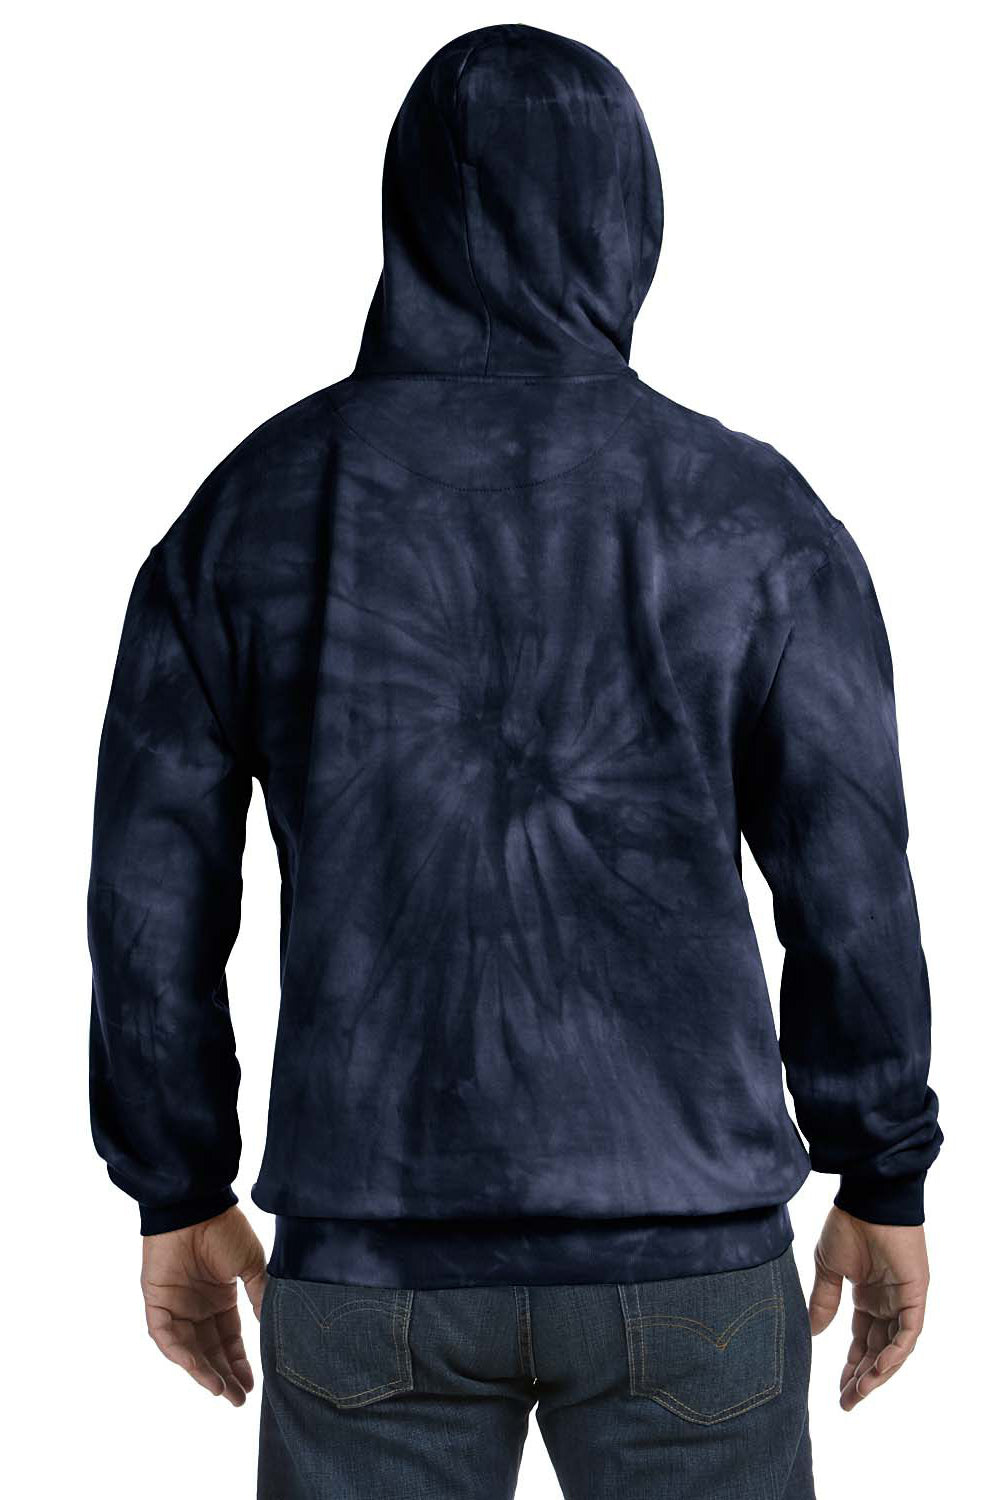 Tie-Dye CD877 Mens Hooded Sweatshirt Hoodie Navy Blue Back